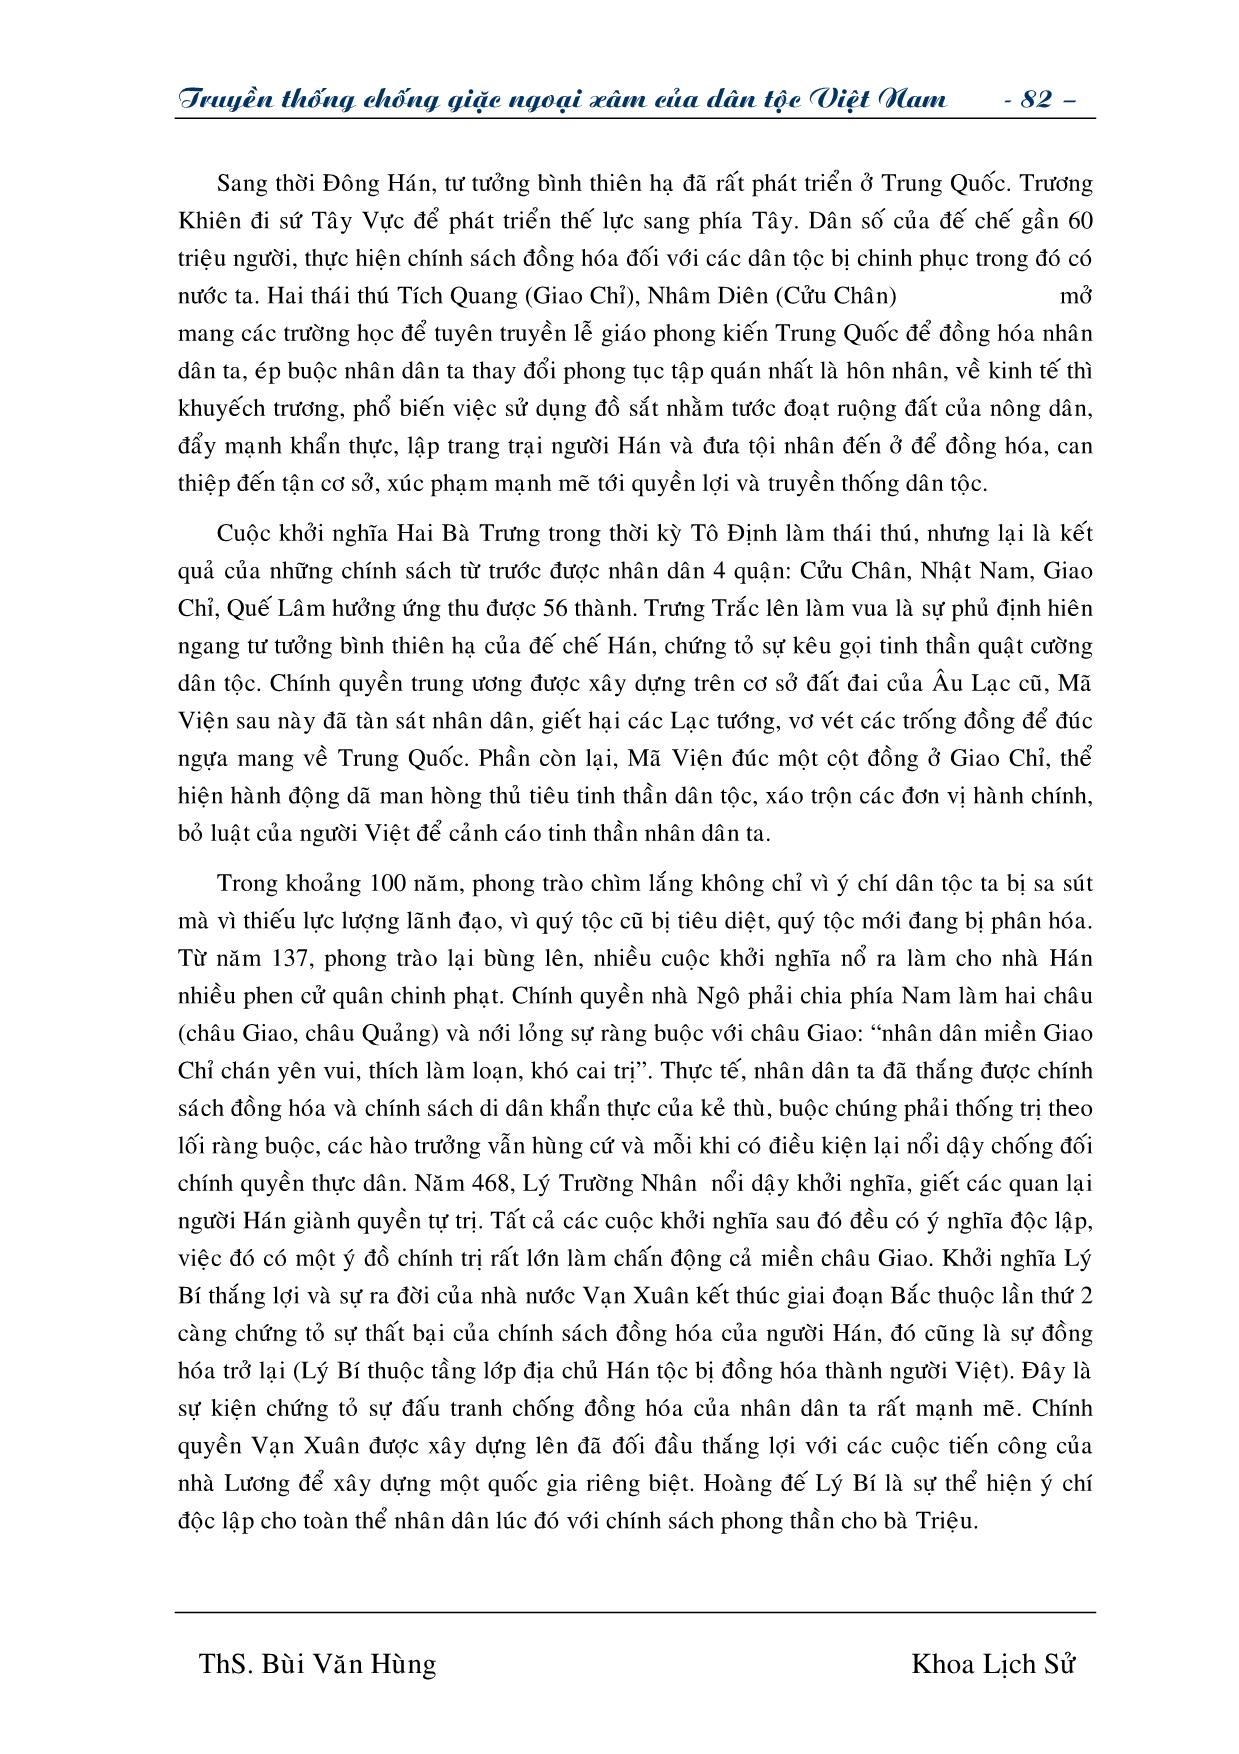 Giáo trình Truyền thống chống giặc ngoại xâm của dân tộc Việt Nam (Phần 2) trang 4